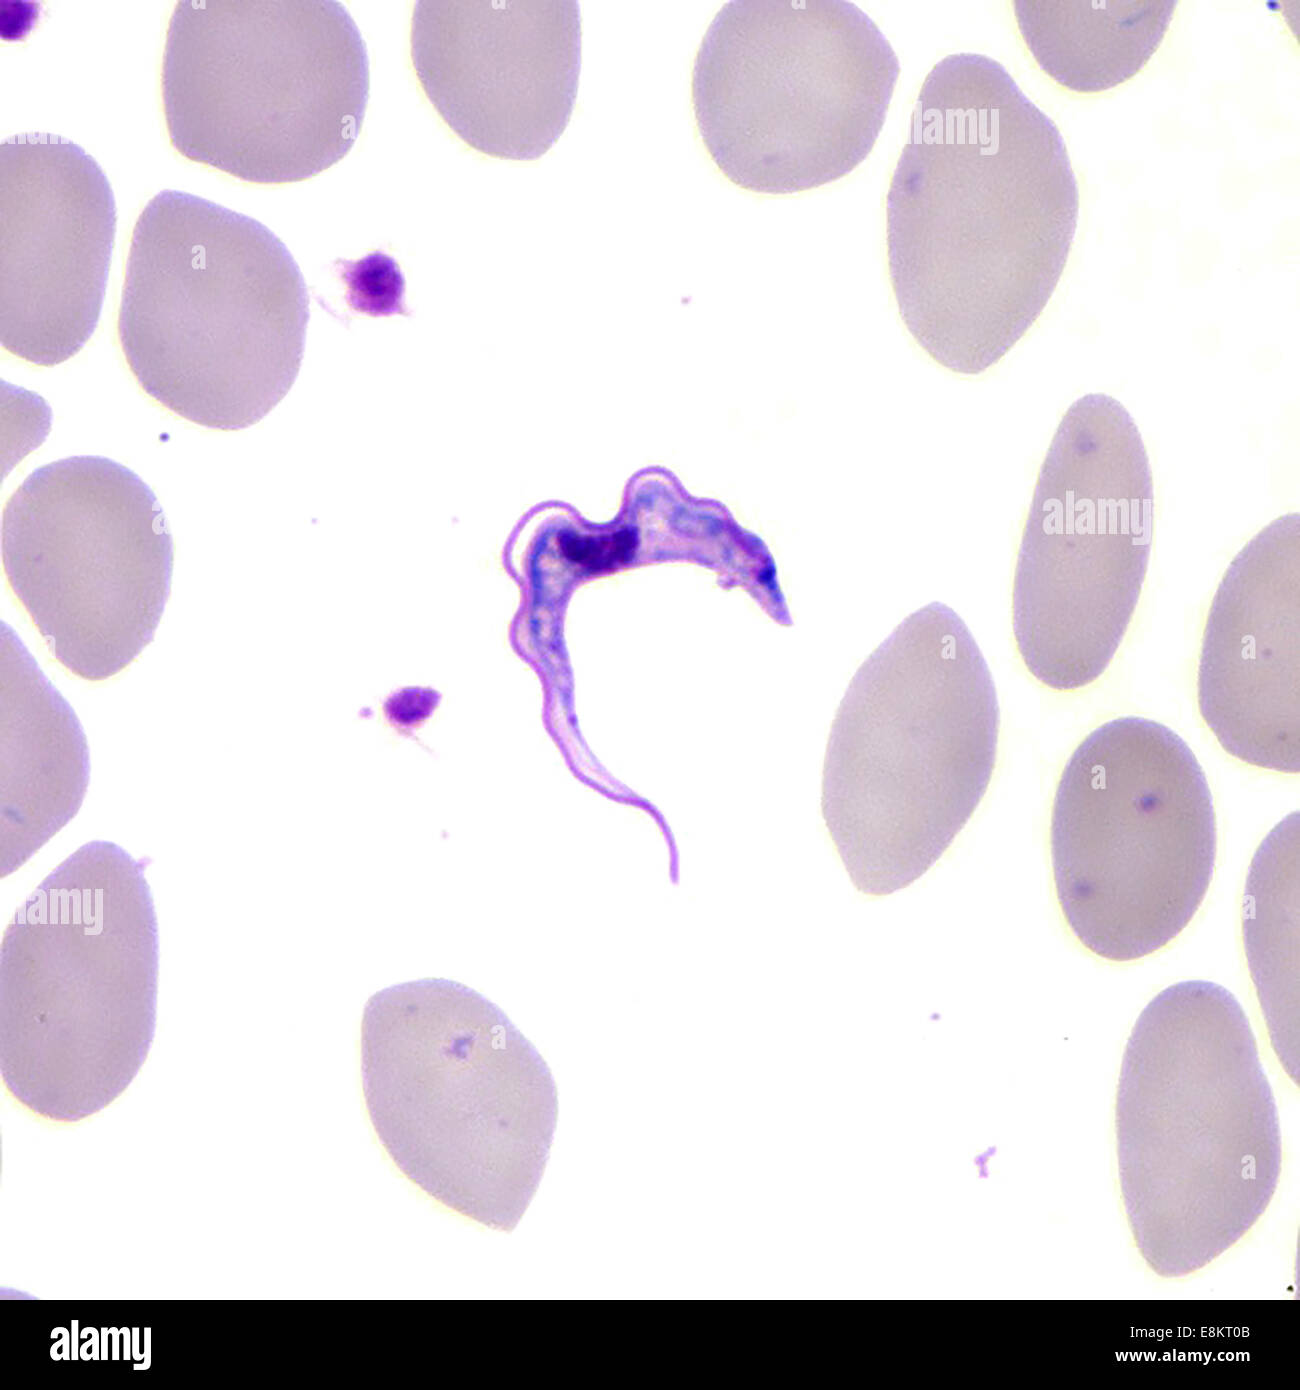 Diese Giemsa gefärbten Licht Mikrophotographie offenbart Vorhandensein von zwei Trypanosomen Trypanosomen Parasiten, die im Blut gefunden wurden Stockfoto